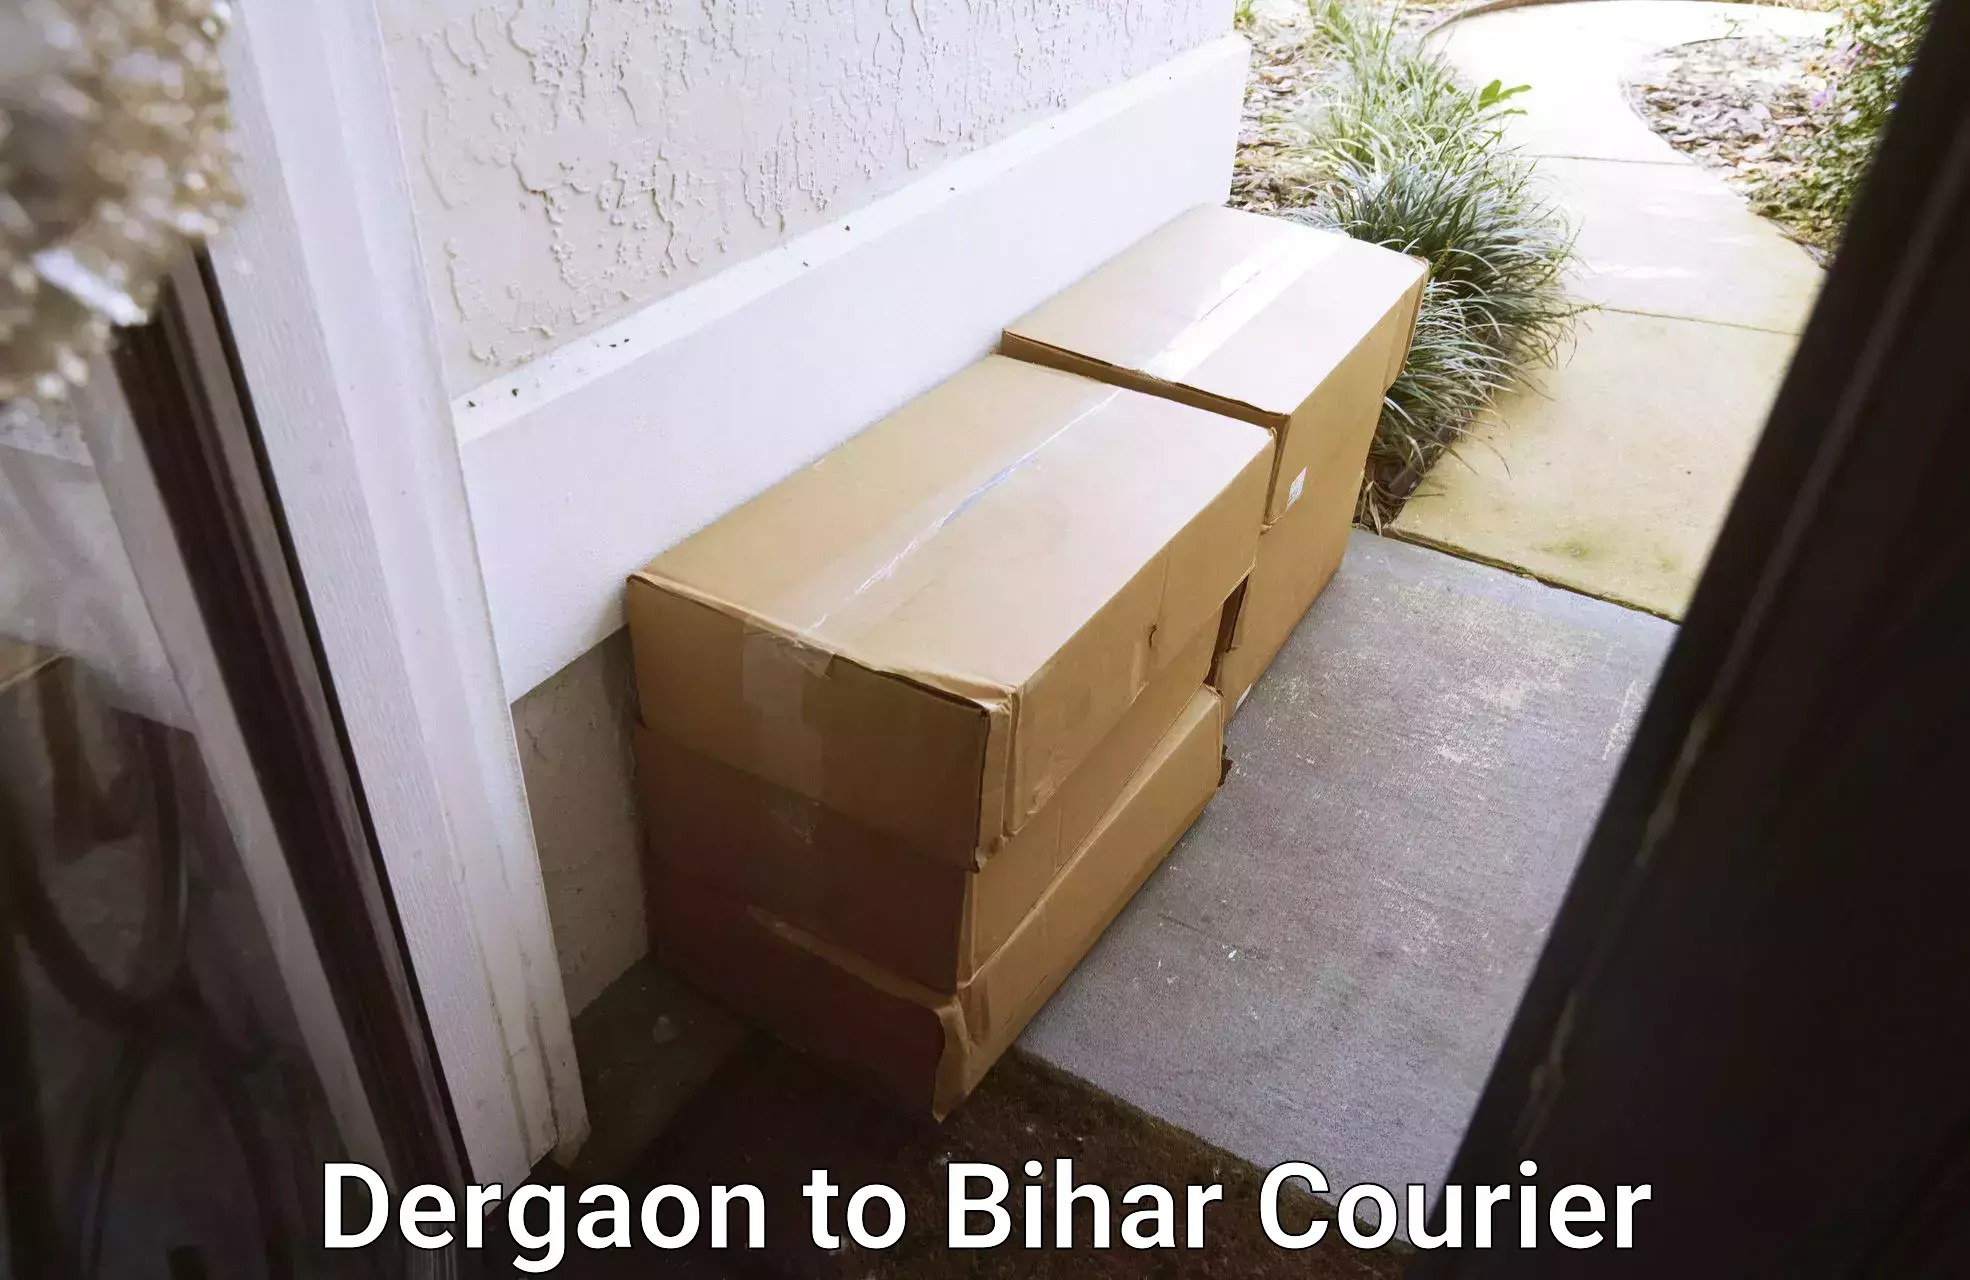 Efficient parcel service Dergaon to Bakhtiarpur